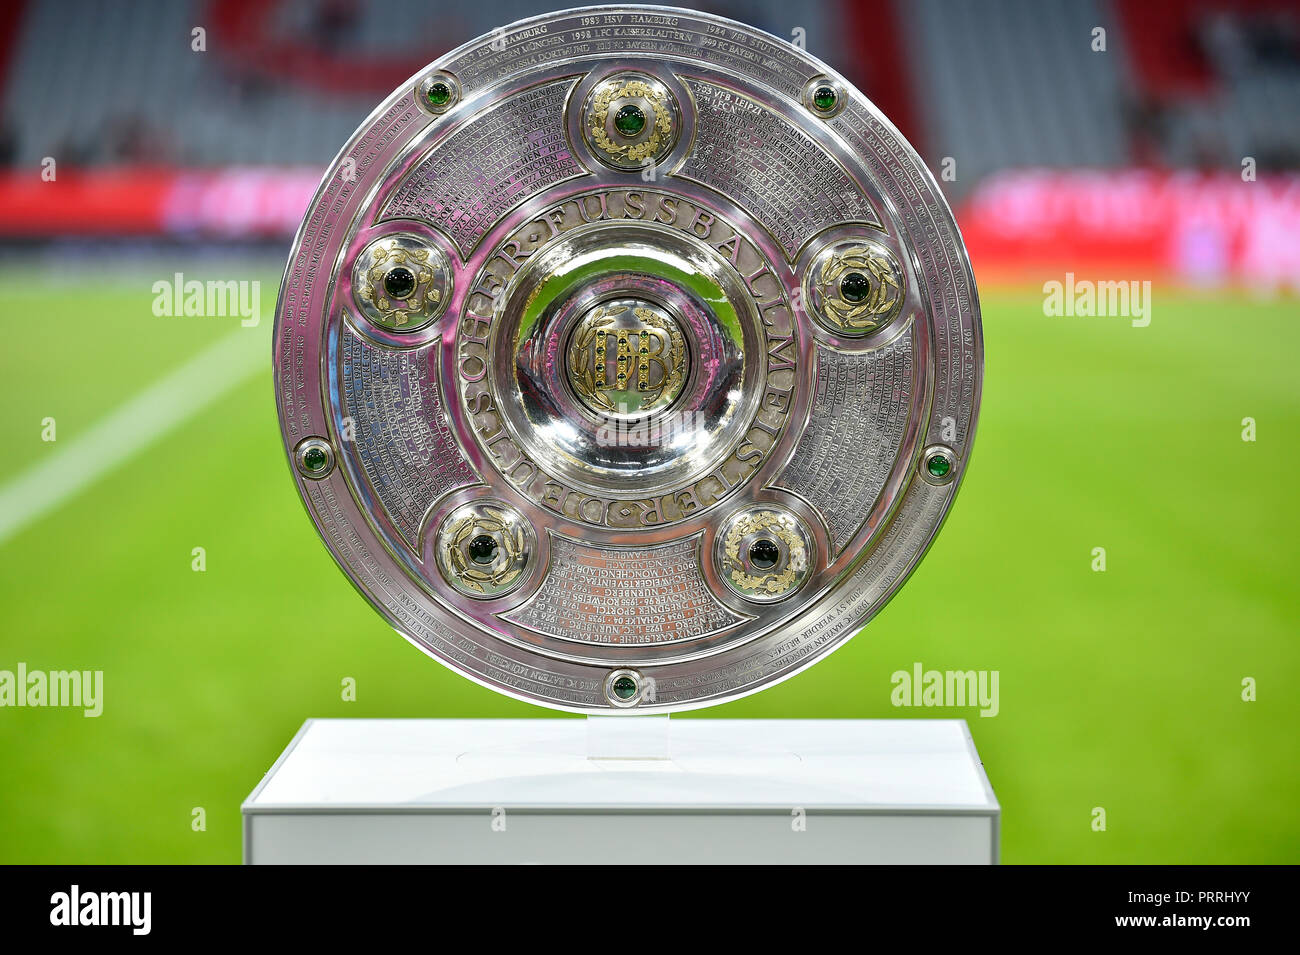 Meisterschaft Pokal der 1. Bundesliga, Allianz-Arena, München, Bayern, Deutschland Stockfoto